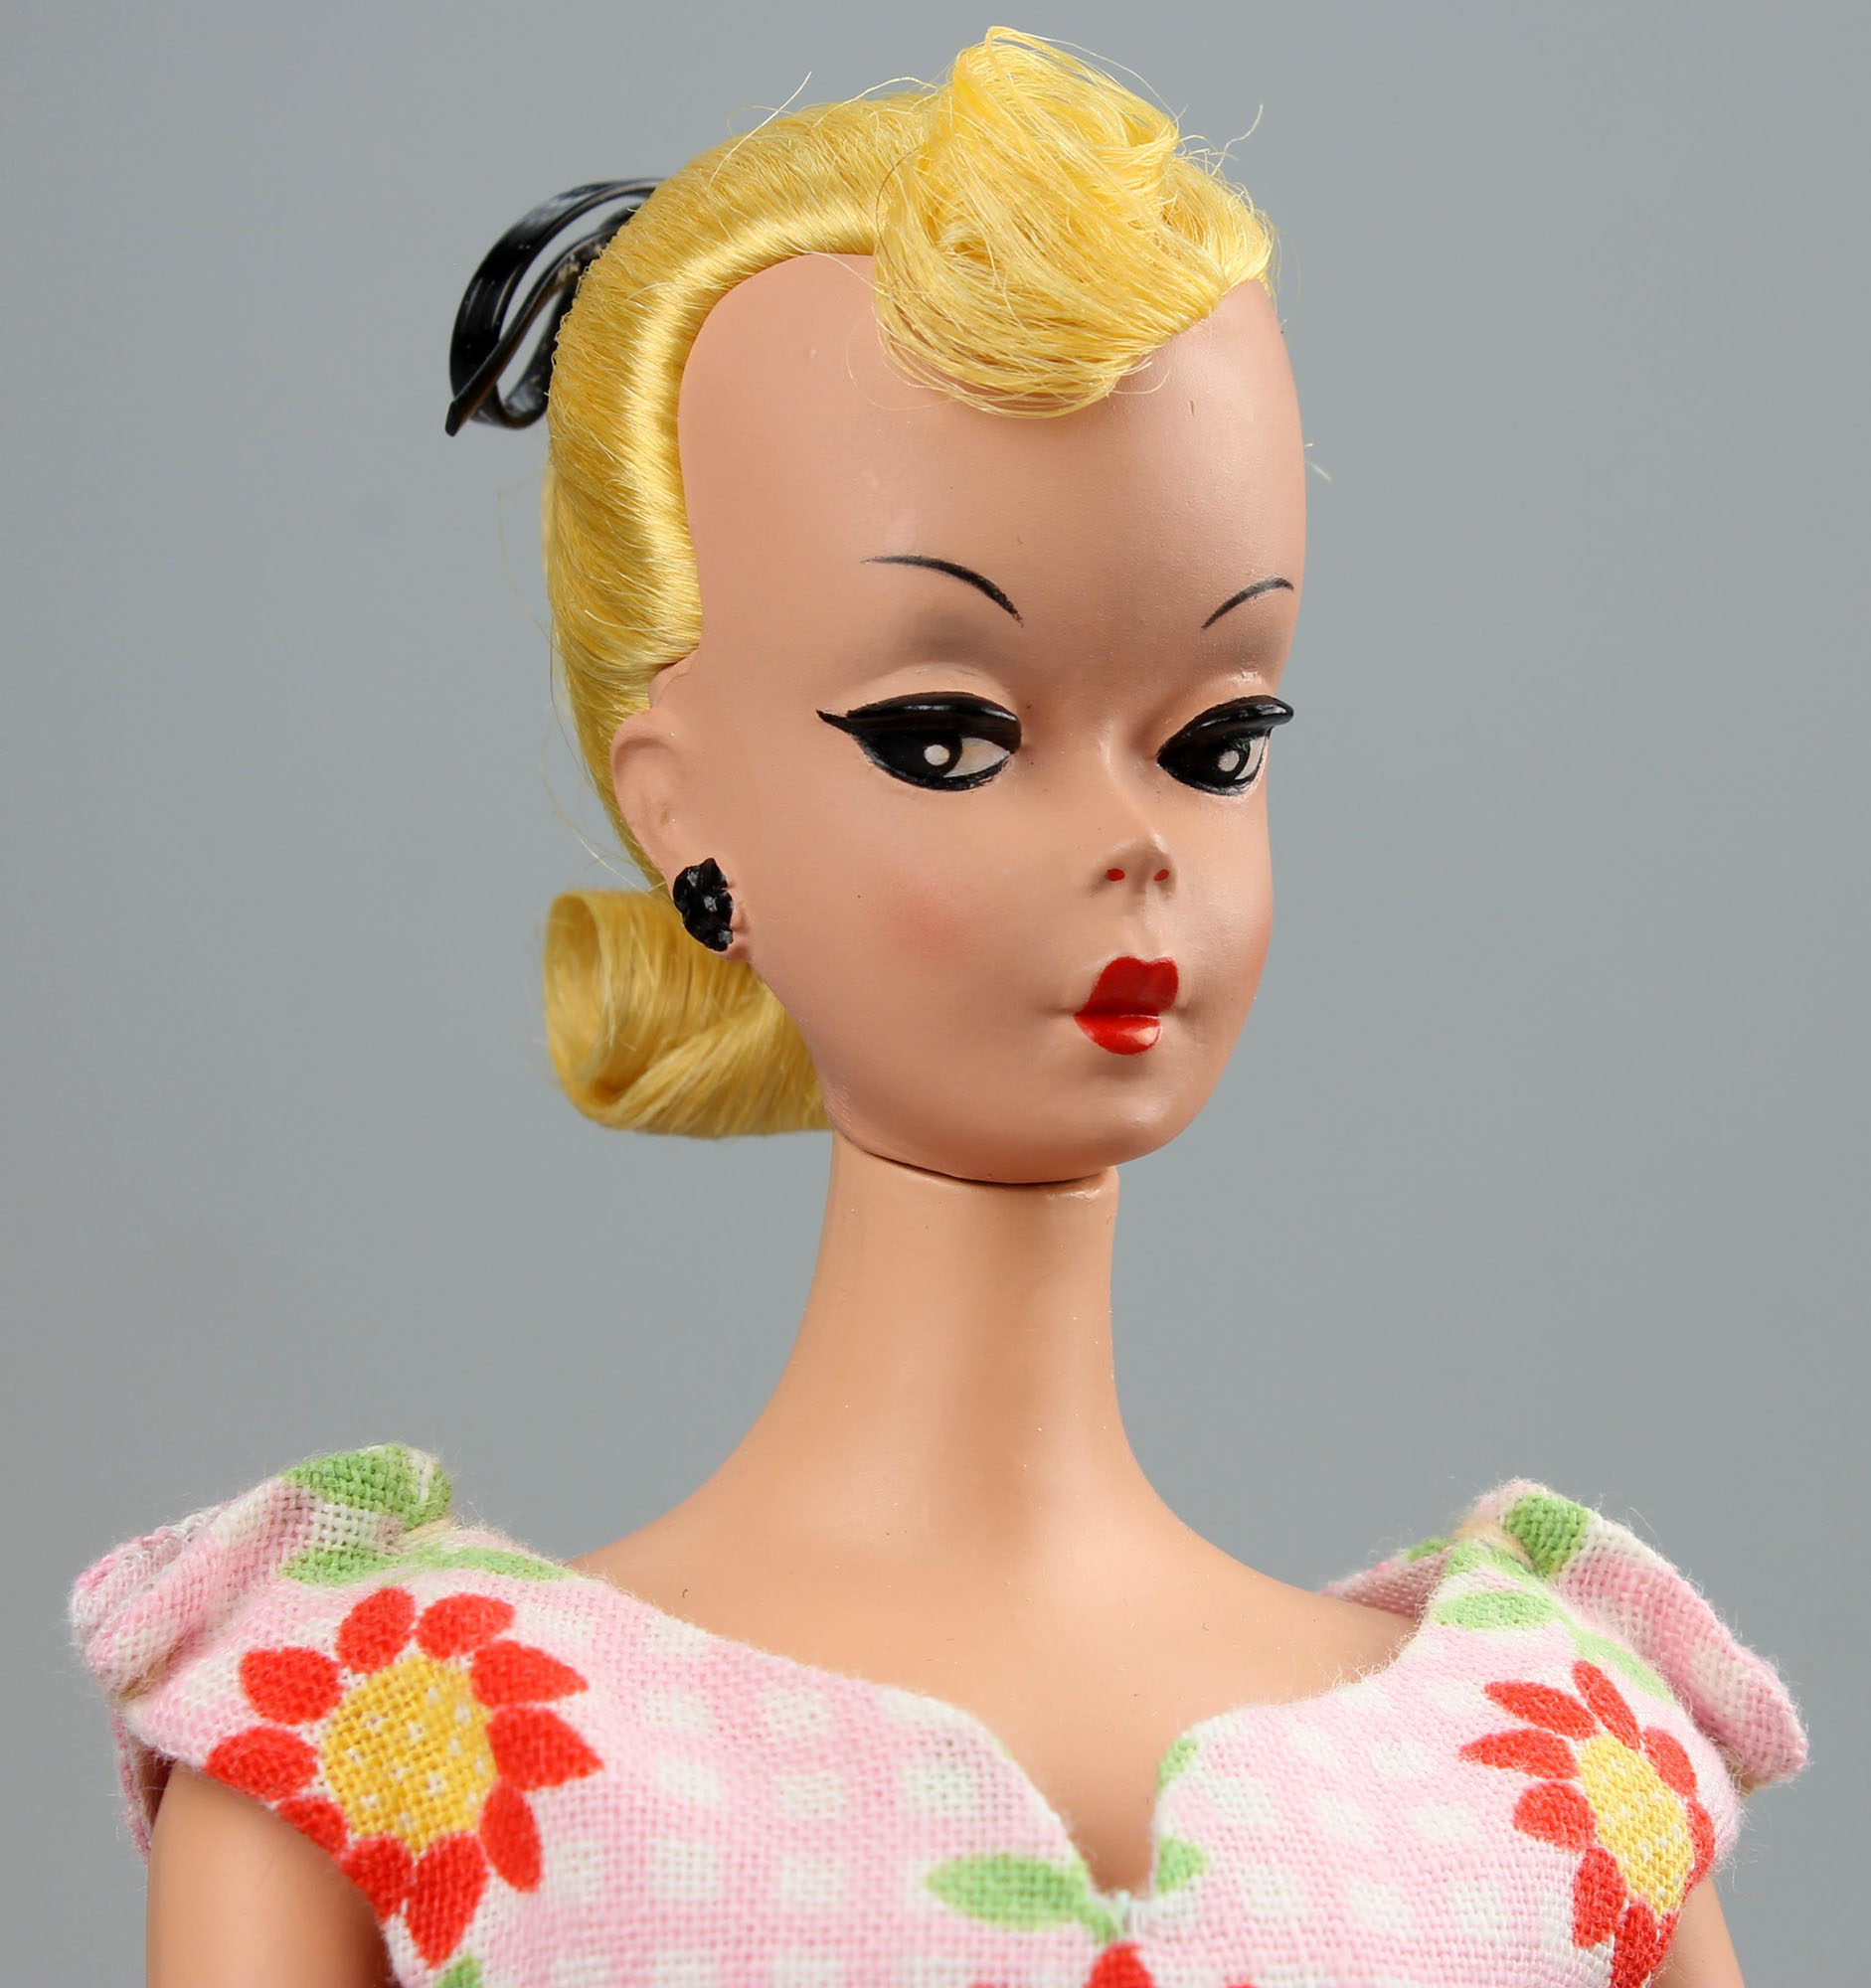 Что известно о Лилли Бильд — кукле для взрослых, которая стала прообразом Барби